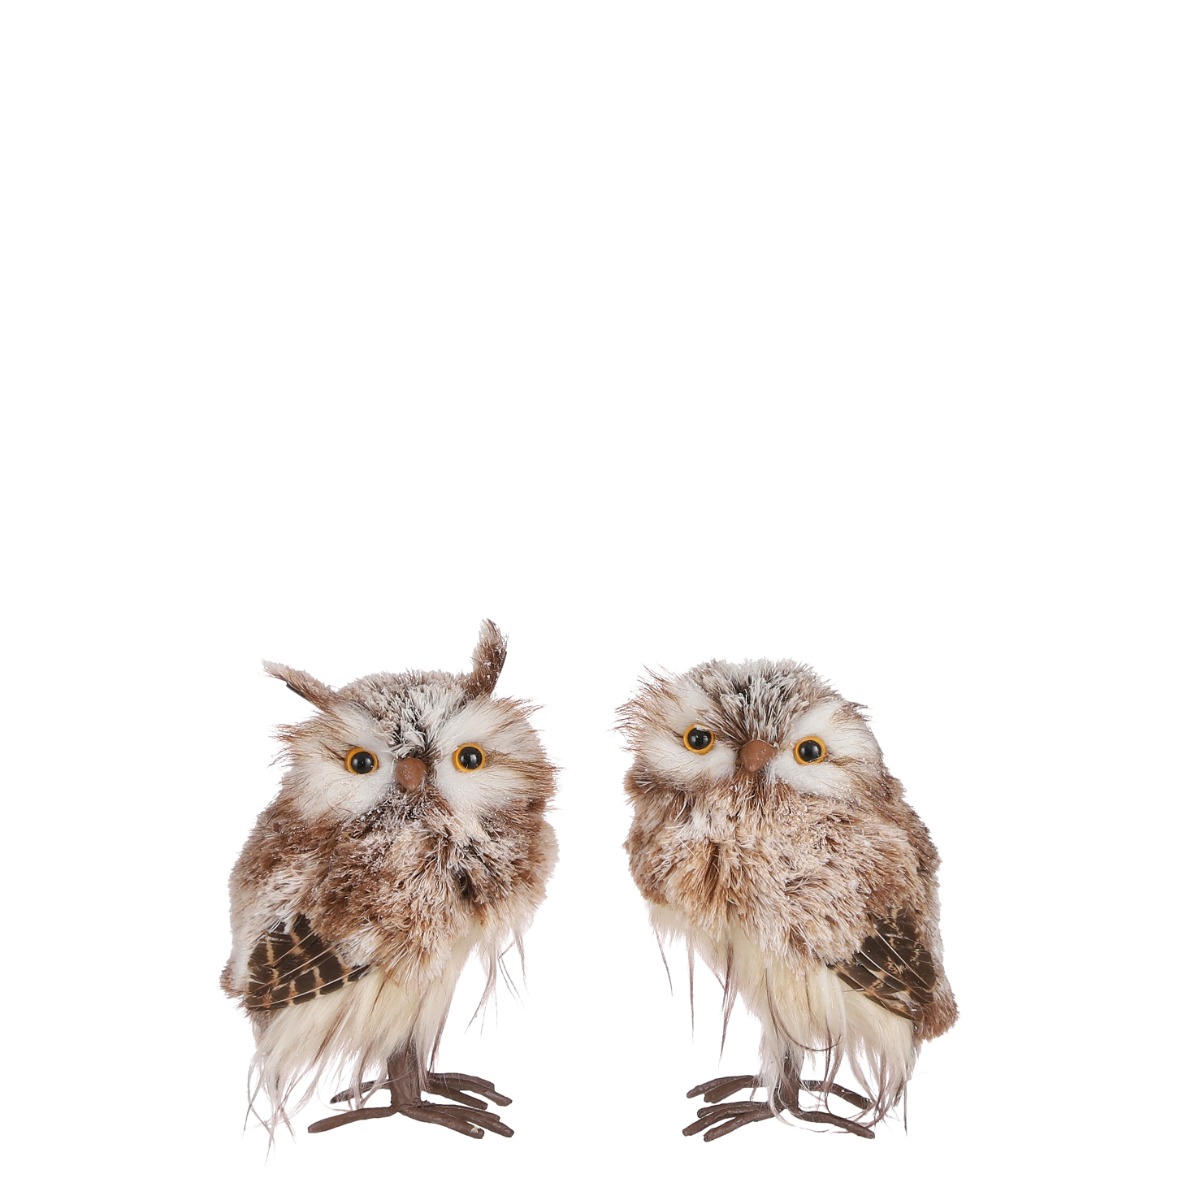 Billede af Brun og hvid ugle 19 cm høj - Ugle uden ører